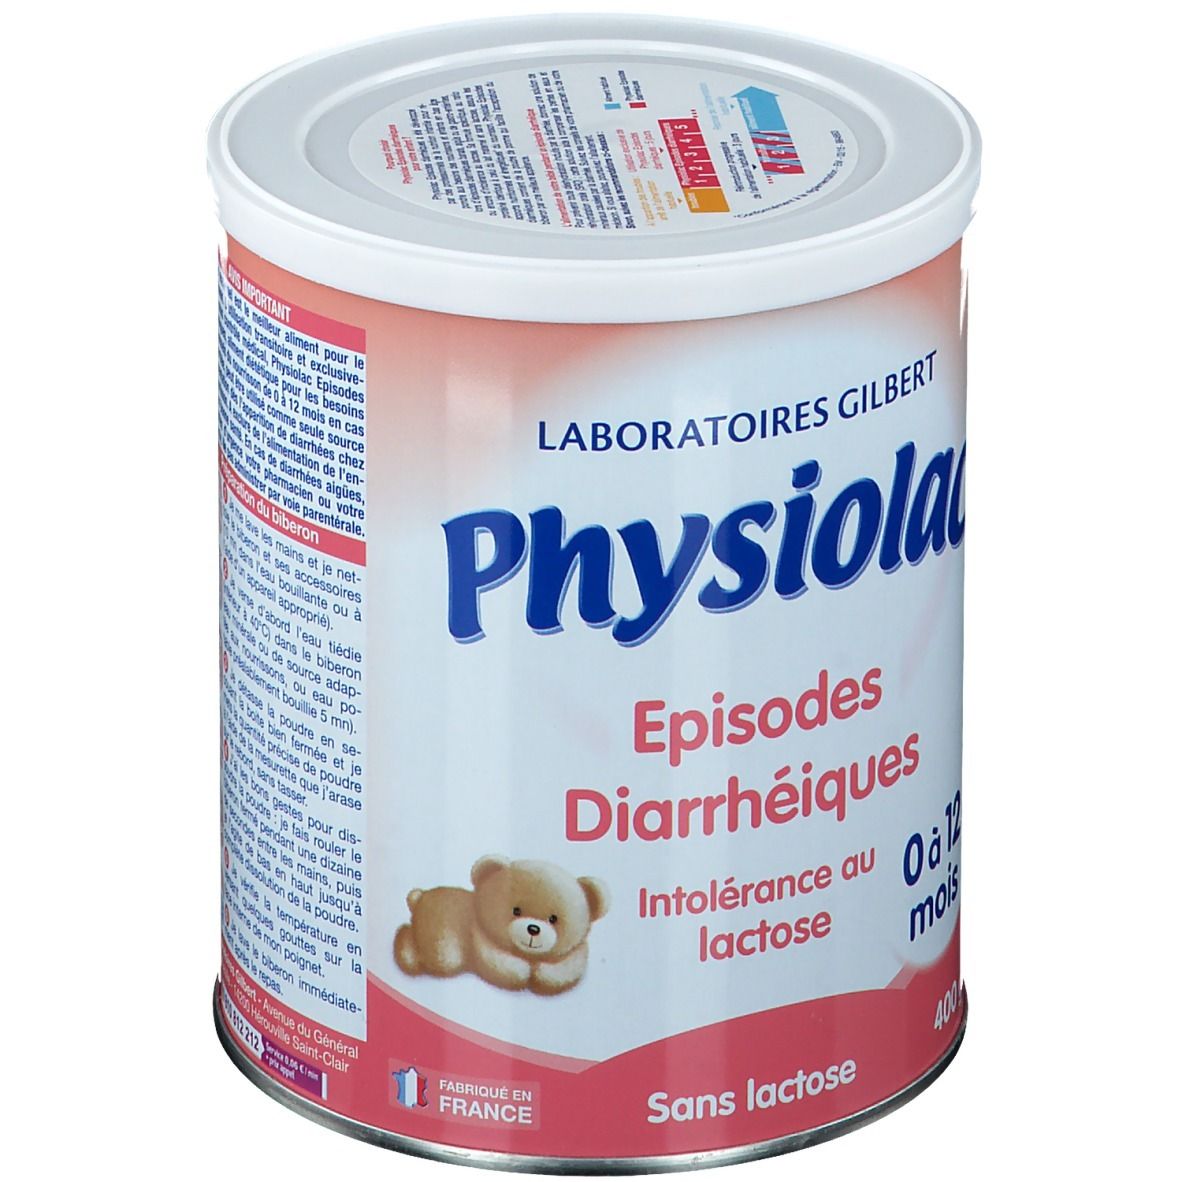 Physiolac Episodes Diarrhéiques 0-12 mois